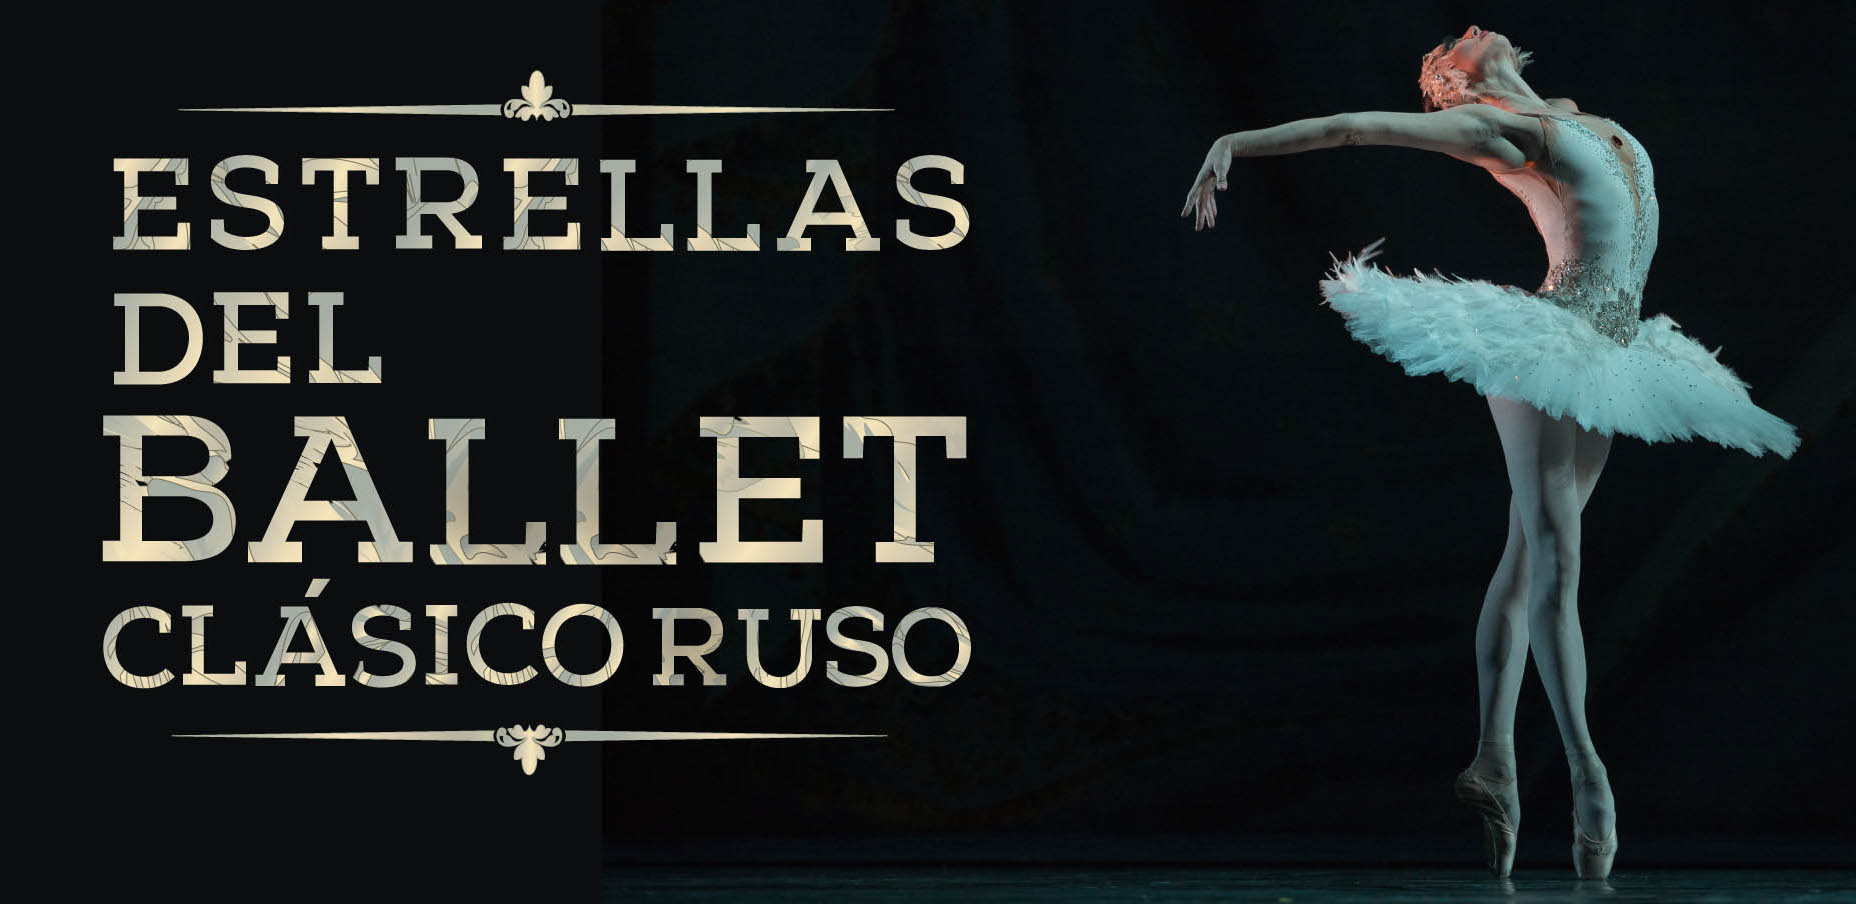 Estrellas del Ballet Clásico Ruso (C)